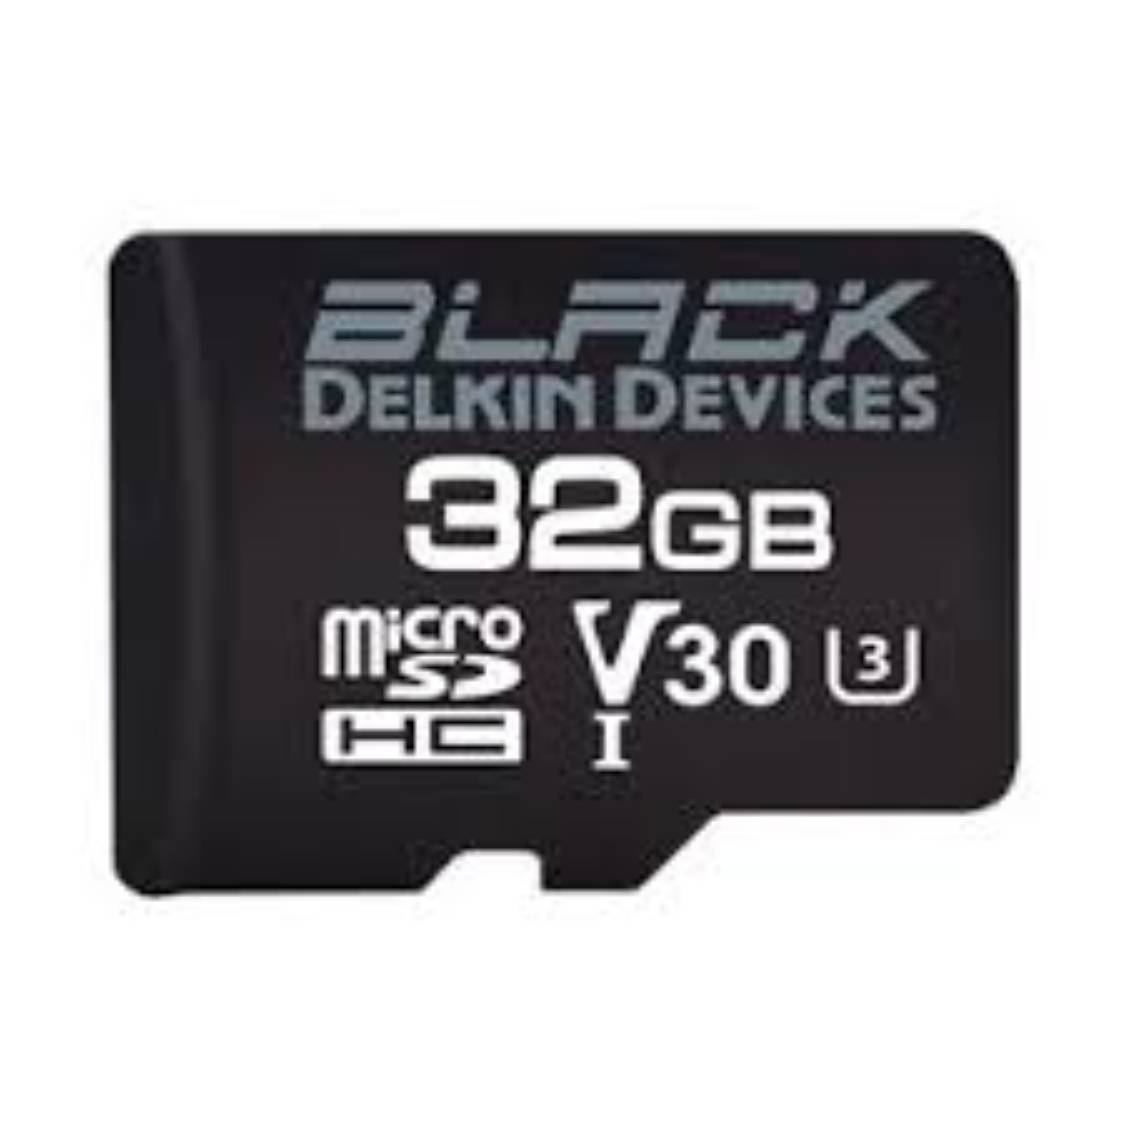 Delkin Black 32GB micro SDHC 90MB/s UHS I V30 Card